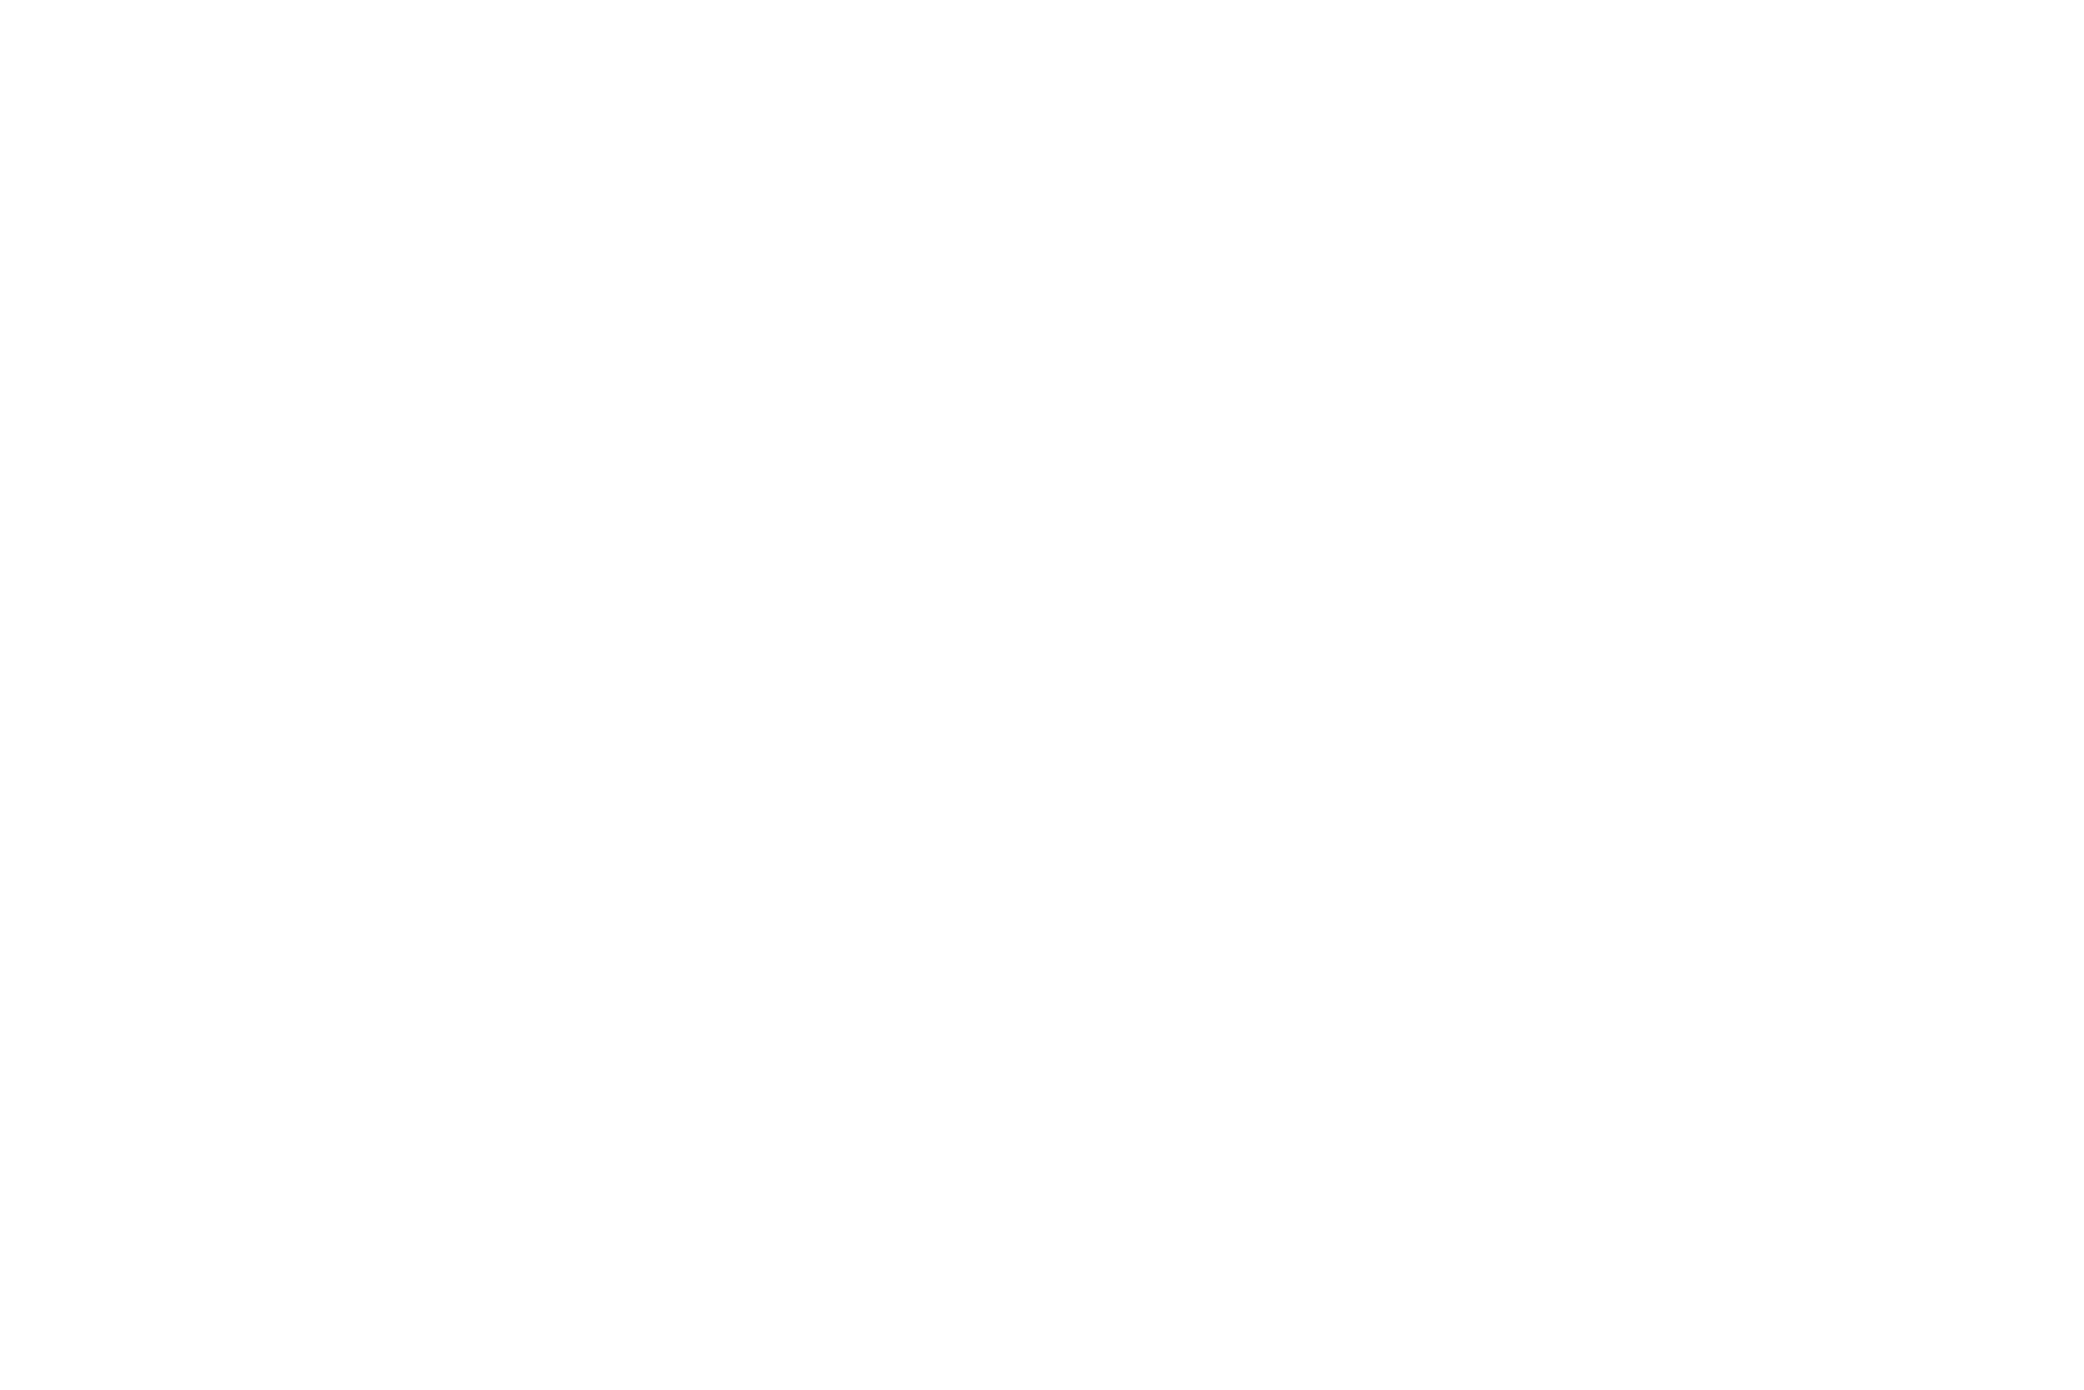 Mare Nostrum Gráficas logo blanco